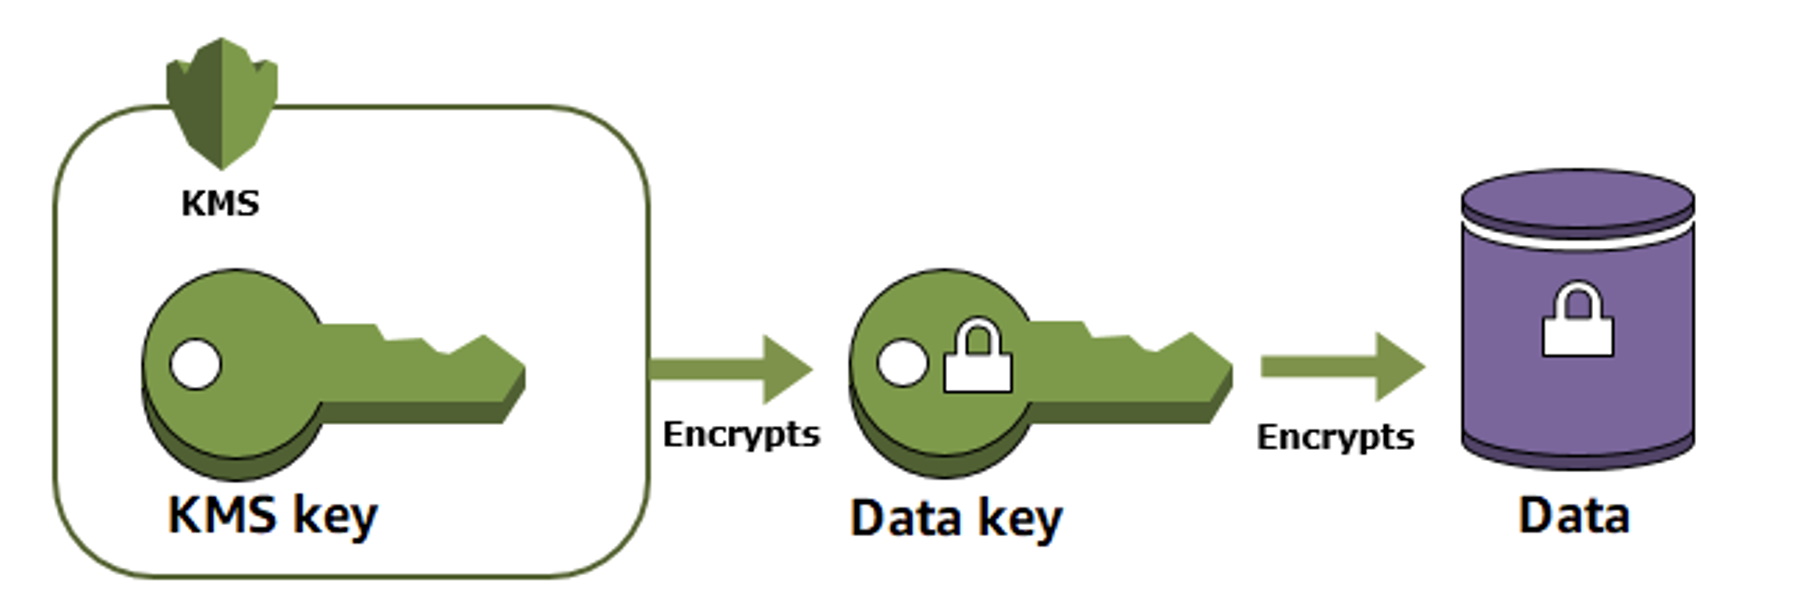 Encryption keys | Šifrovací klíče a aplikační tajnosti v cloudu | Encyklopedie cloudu ORBIT